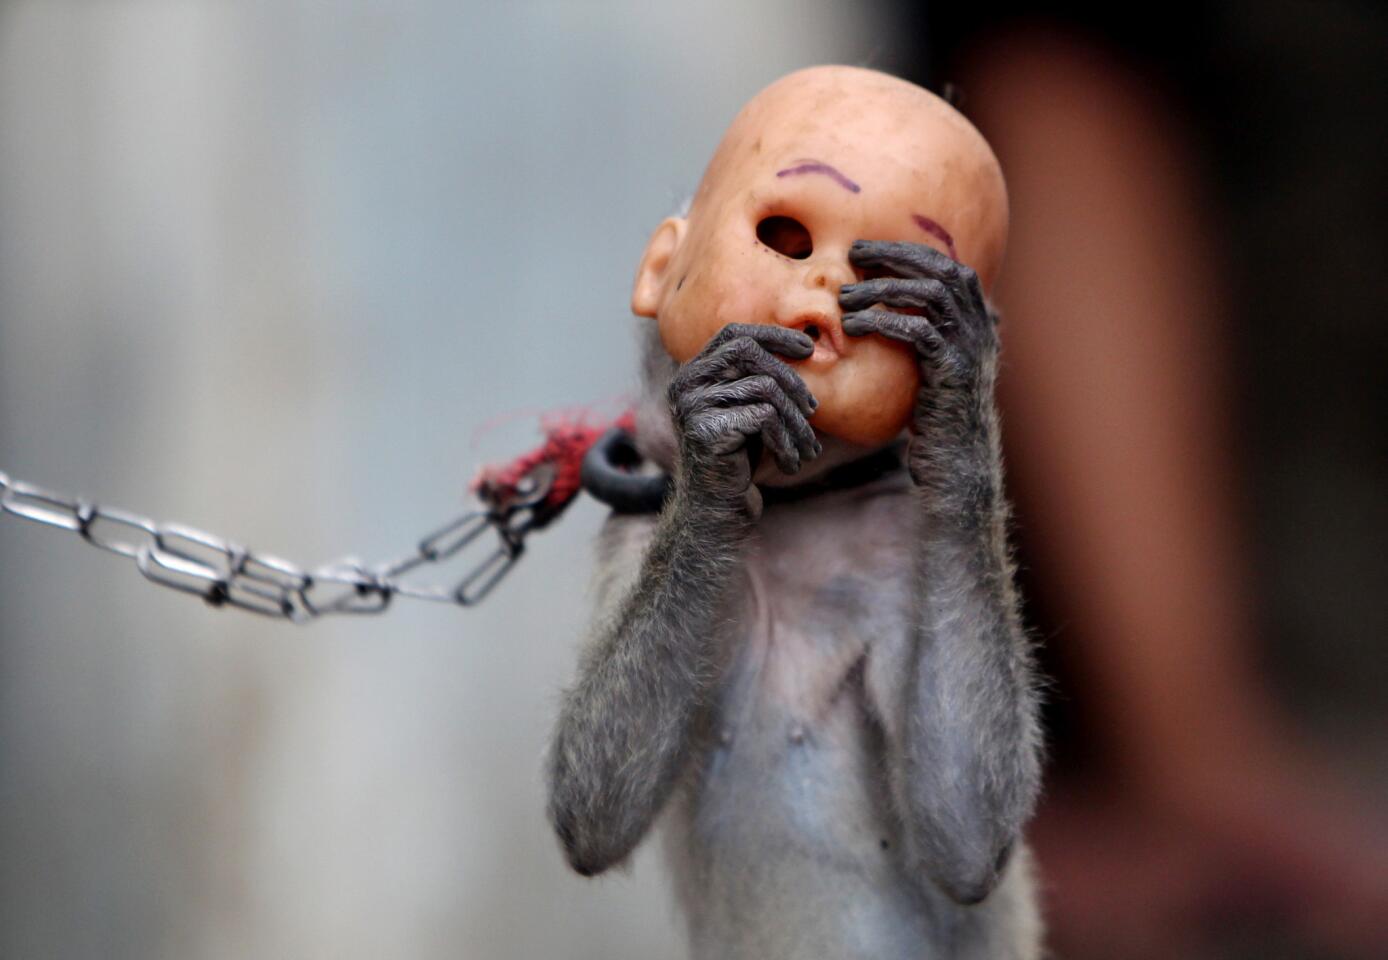 A street monkey wears a doll mask as it performs in a slum in Jakarta, Indonesia.